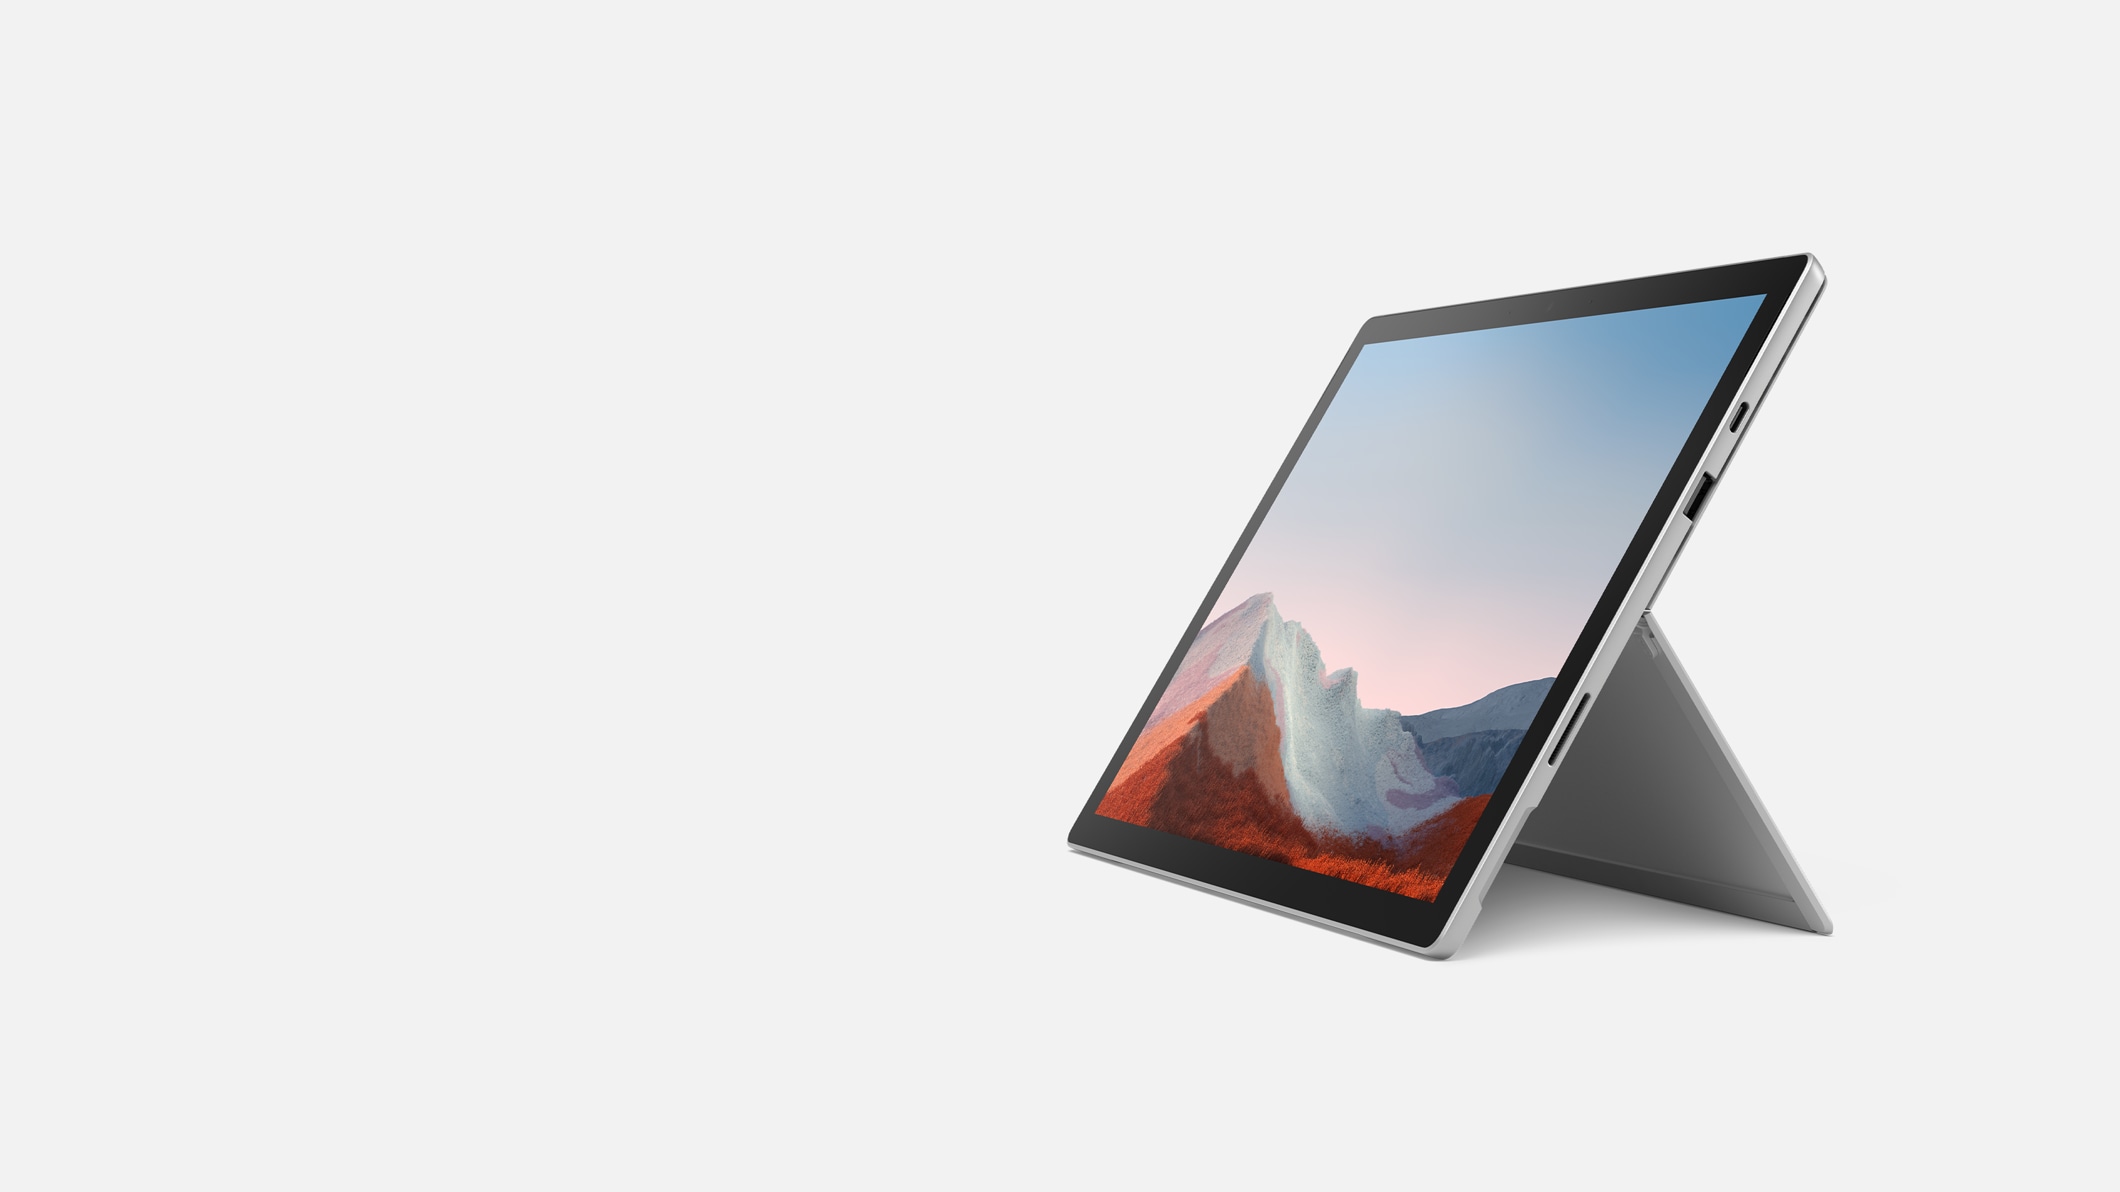 キックスタンドで自立している法人向け Surface Pro 7+ (プラチナ)。